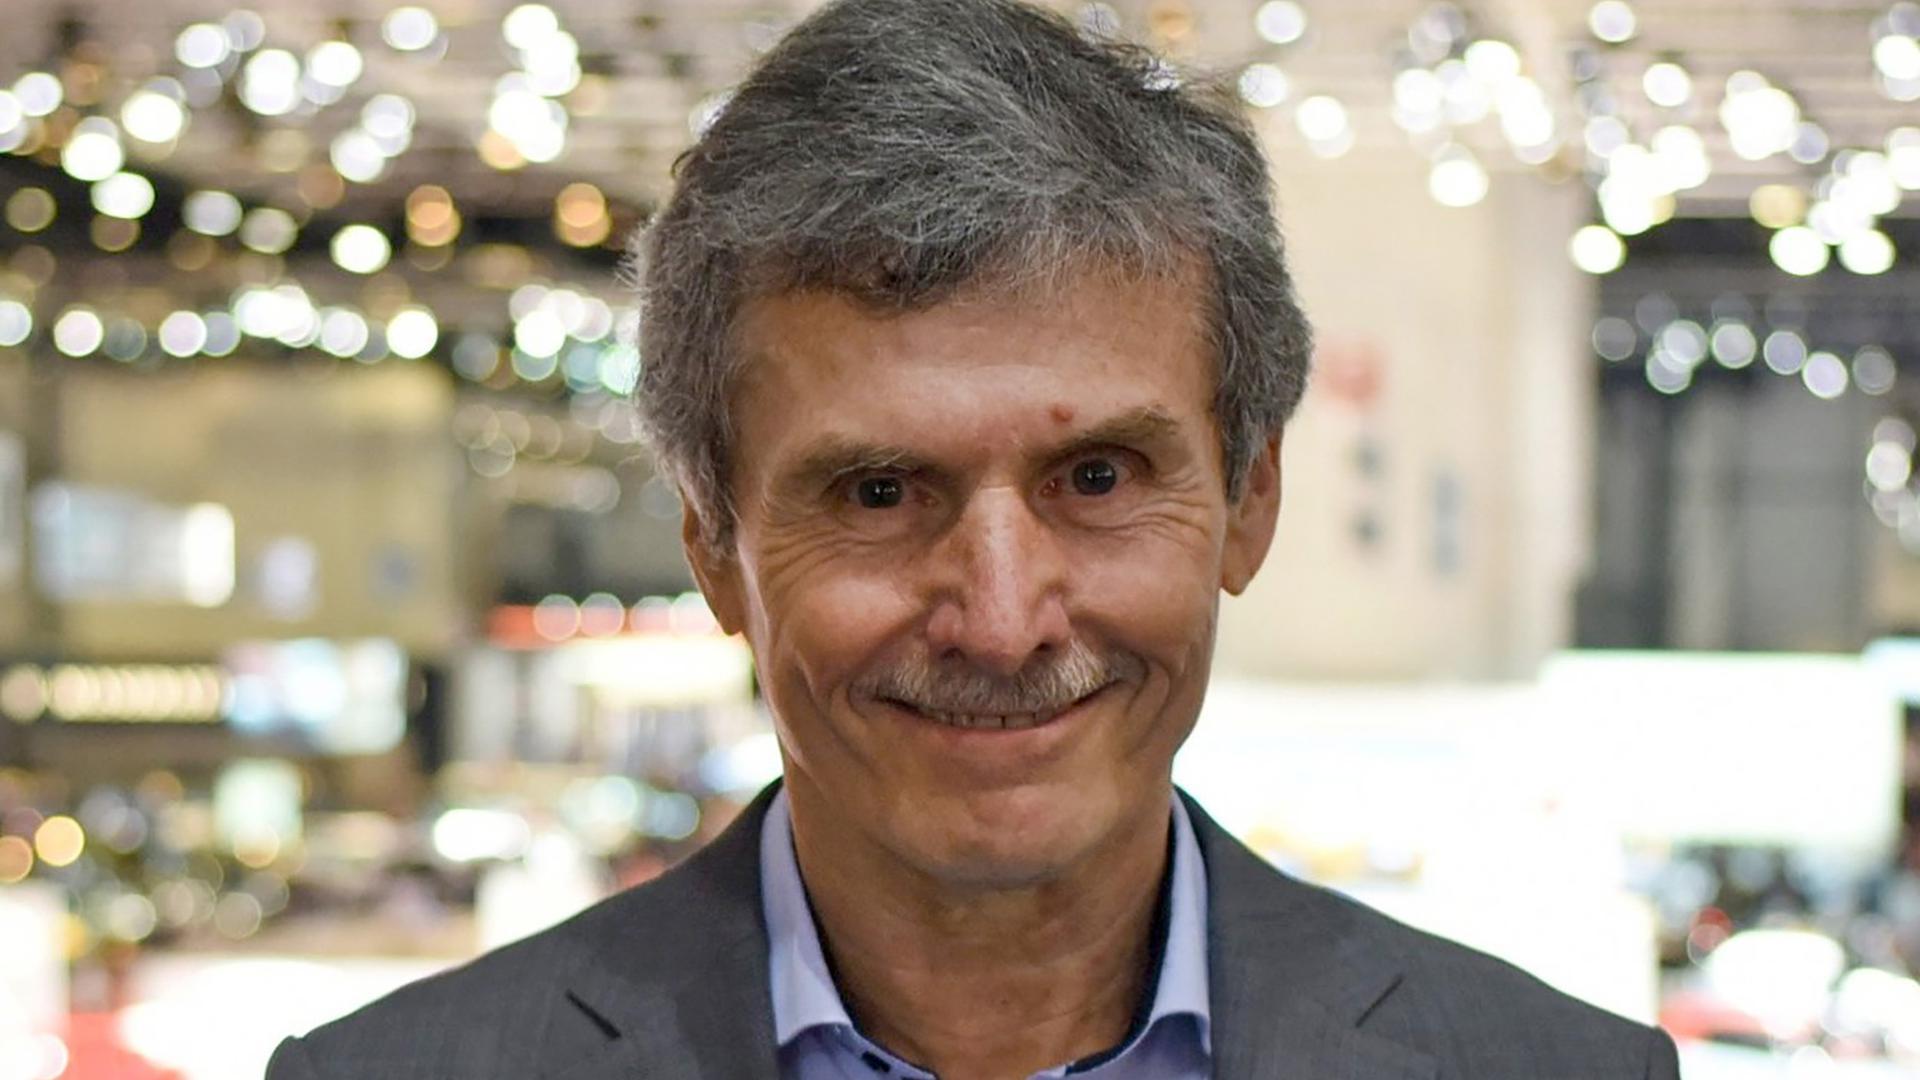 Ferdinand Dudenhöffer, Experte für die Autobranche, aufgenommen beim Genfer Autosalon. (zu dpa «Dudenhöffer: Verluste der Autobauer zeigen Anpassungsbedarf») +++ dpa-Bildfunk +++